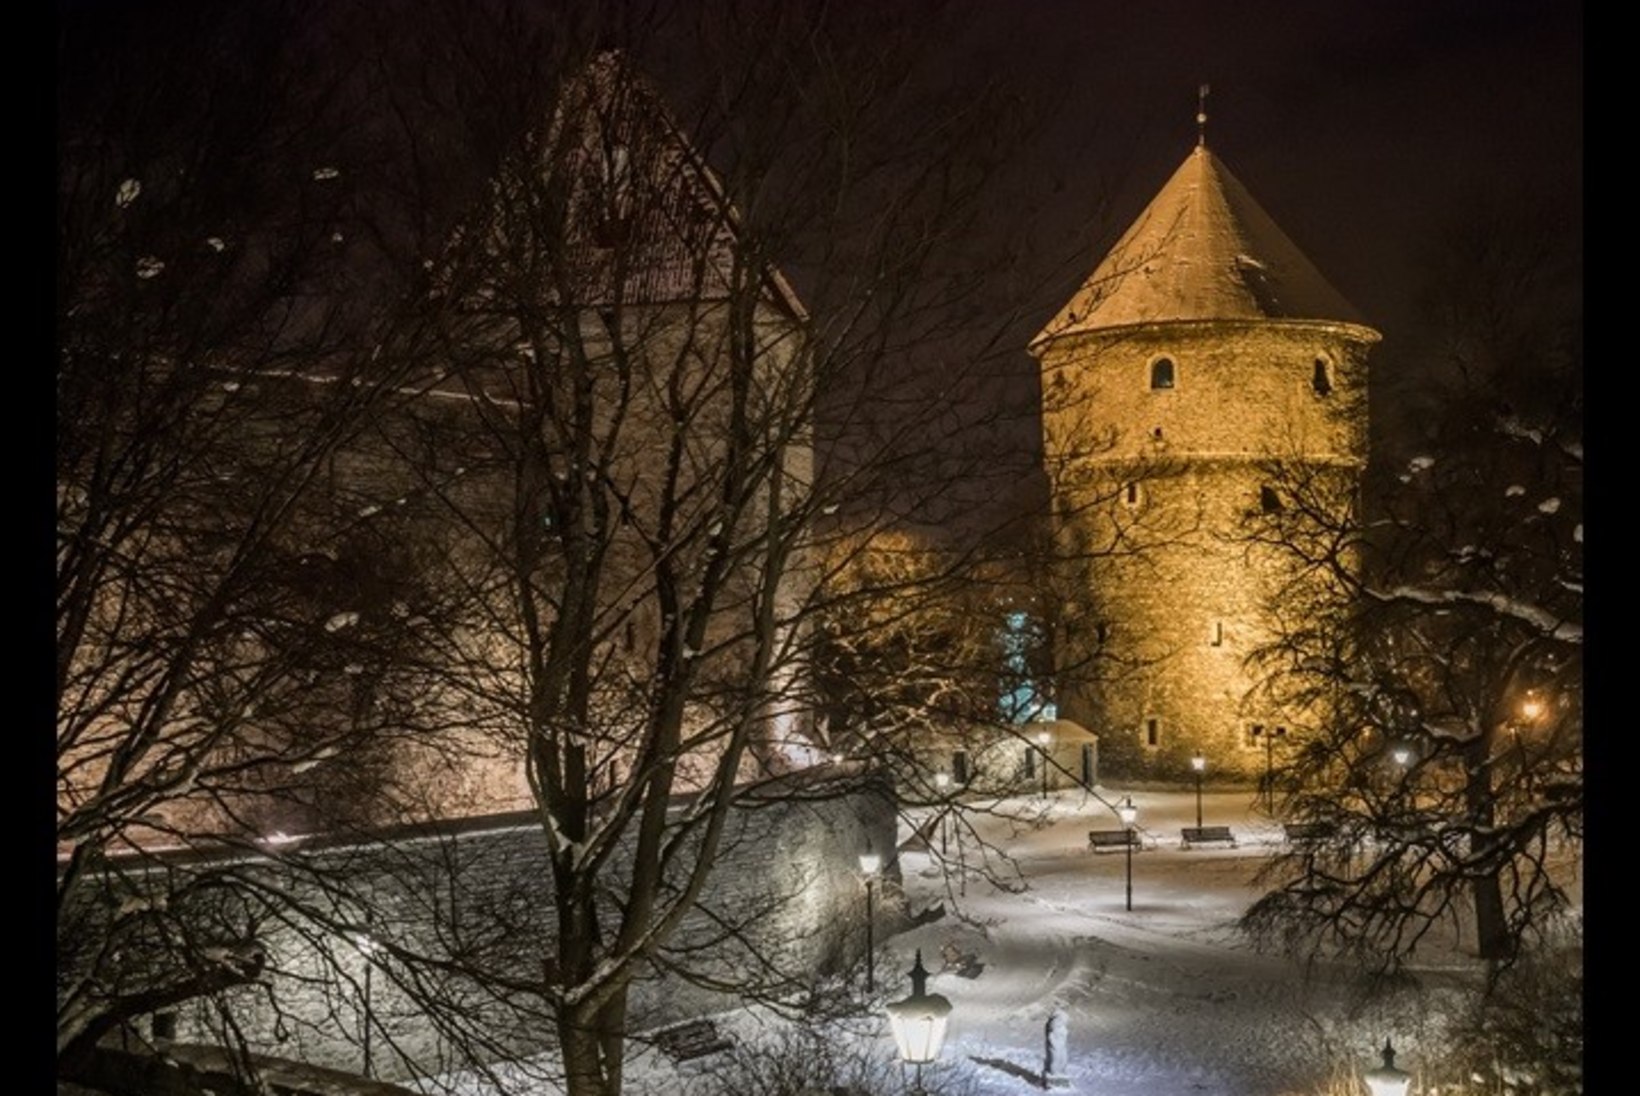 VAATA JA IMETLE: Eesti fotograafi kaunid vanalinnakaadrid koguvad netis Tallinnale kuulsust